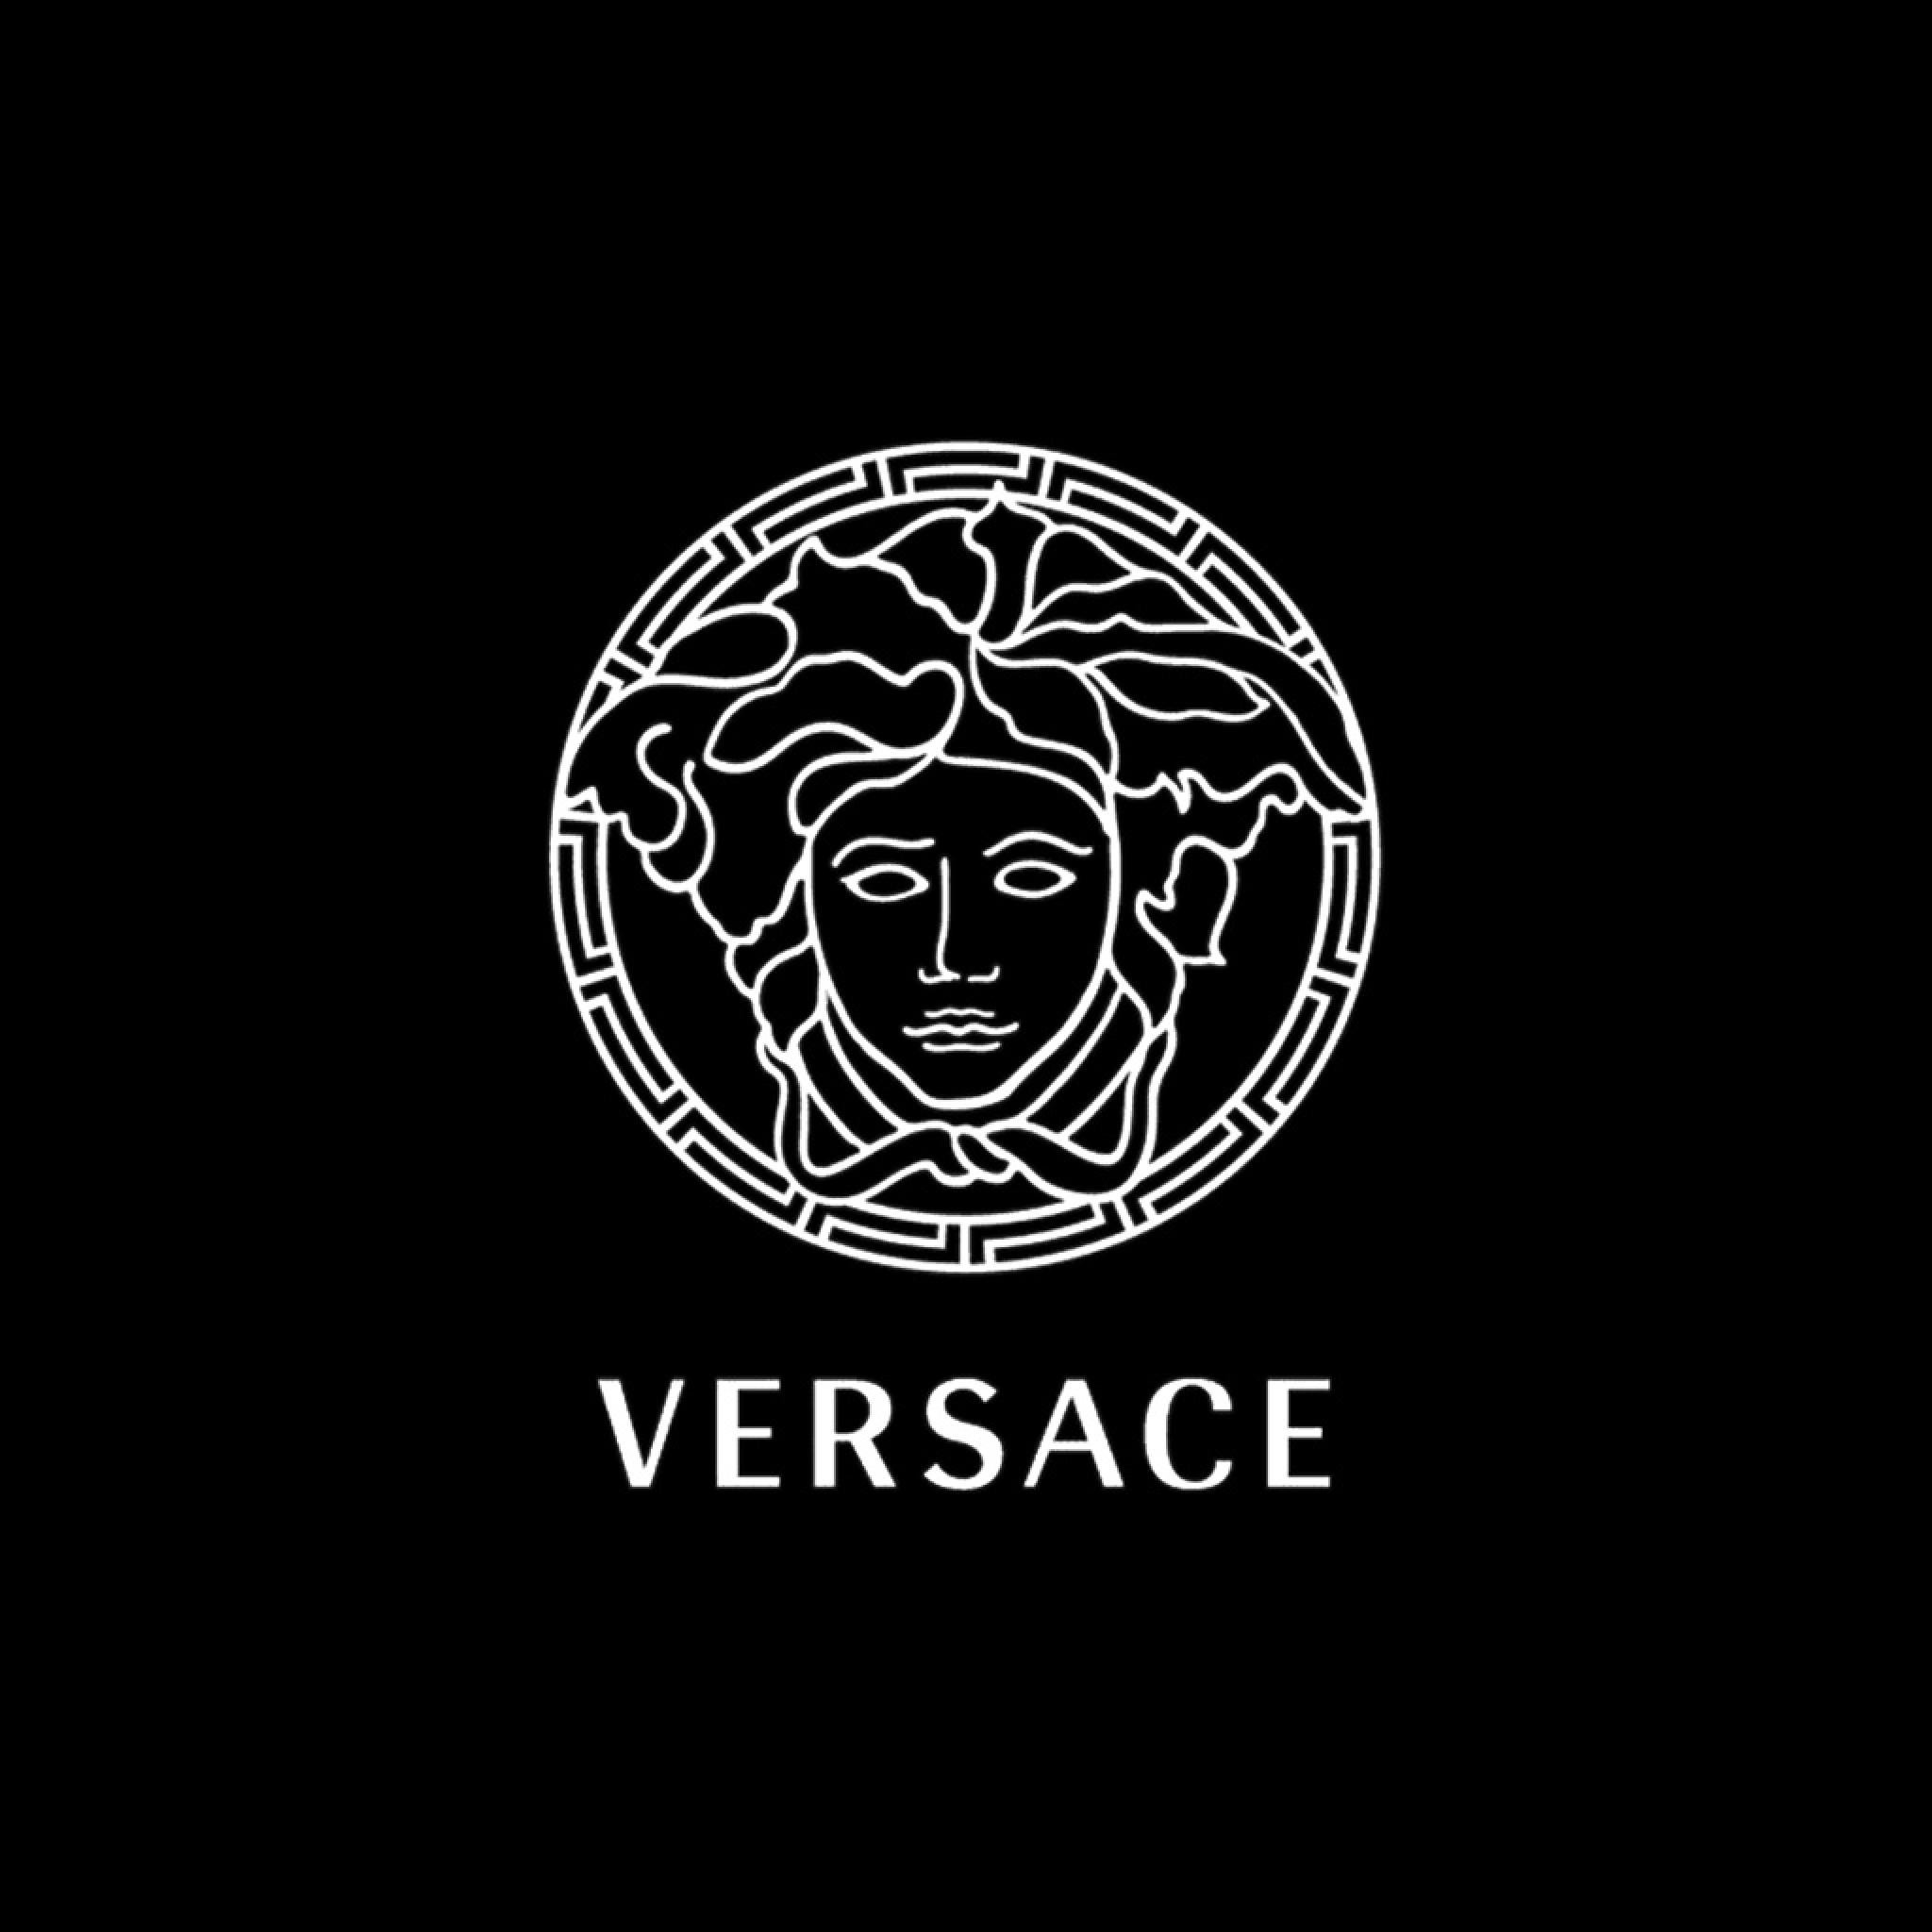 Versace Vaporwave Wallpapers